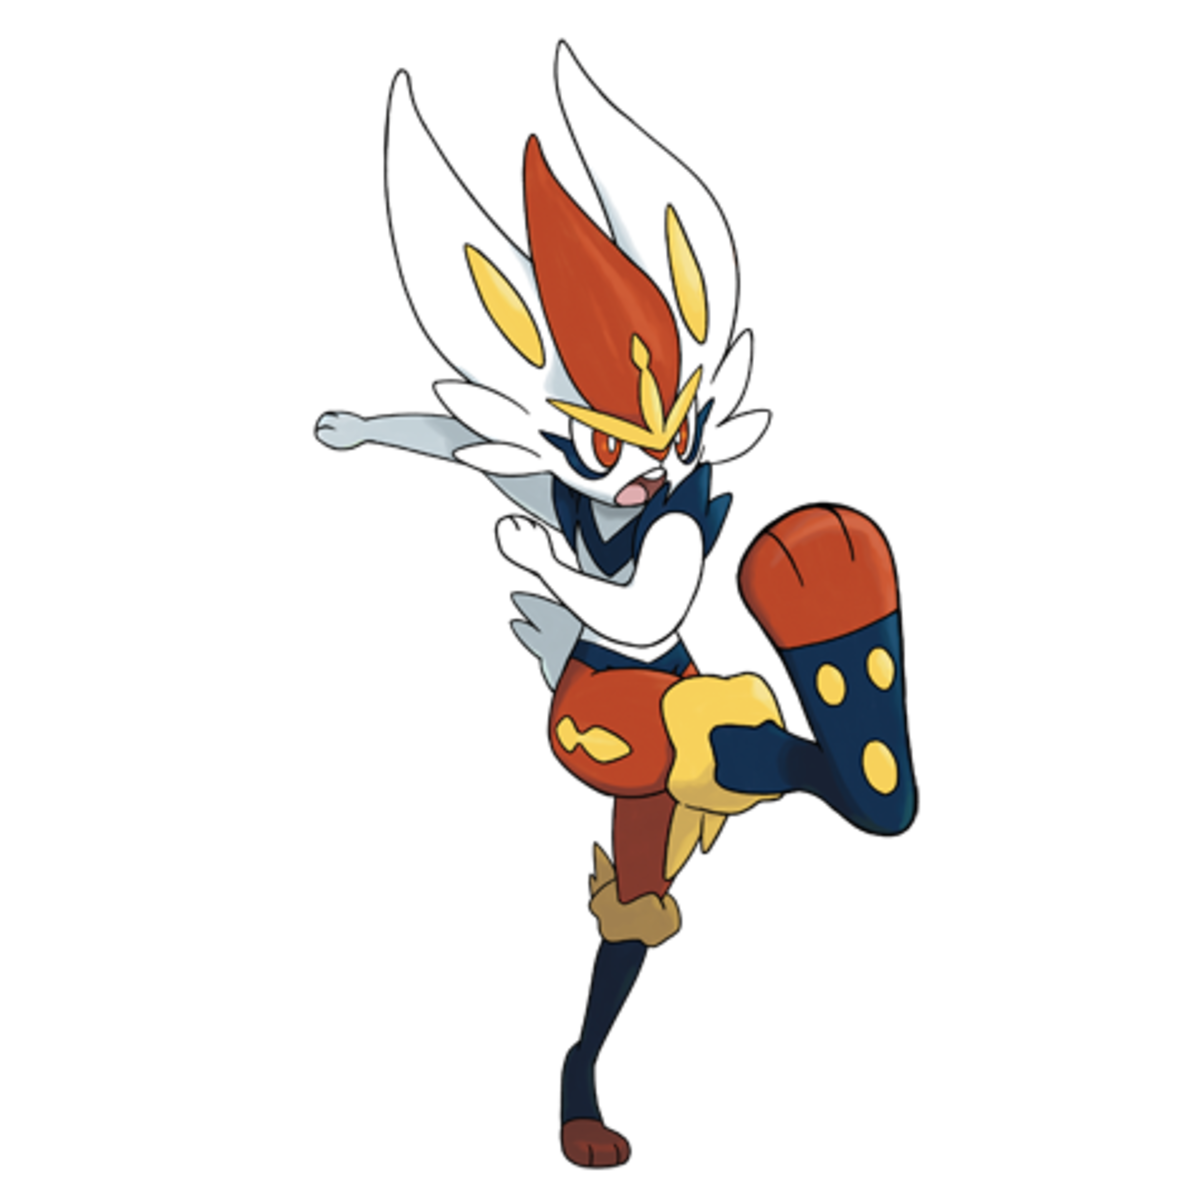 Cinderace, the "Striker" Pokémon